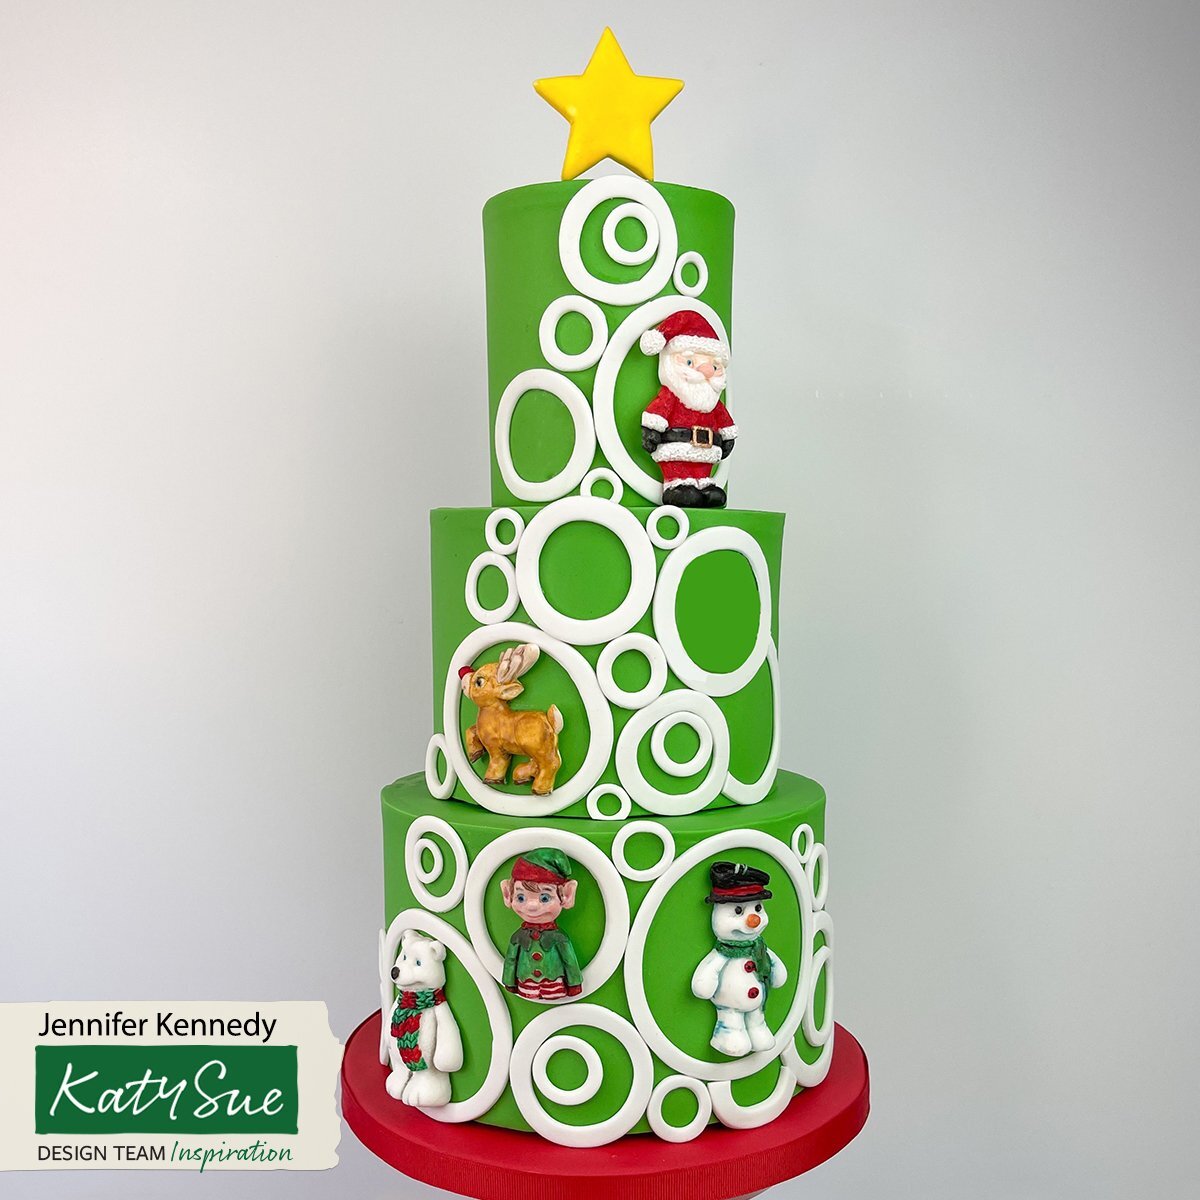 Christmas Santa Large Silicone Mold Fondant Mold Chocolate Mold Christmas  Cake Decoration Cake Decorating Tools Cake Molds 